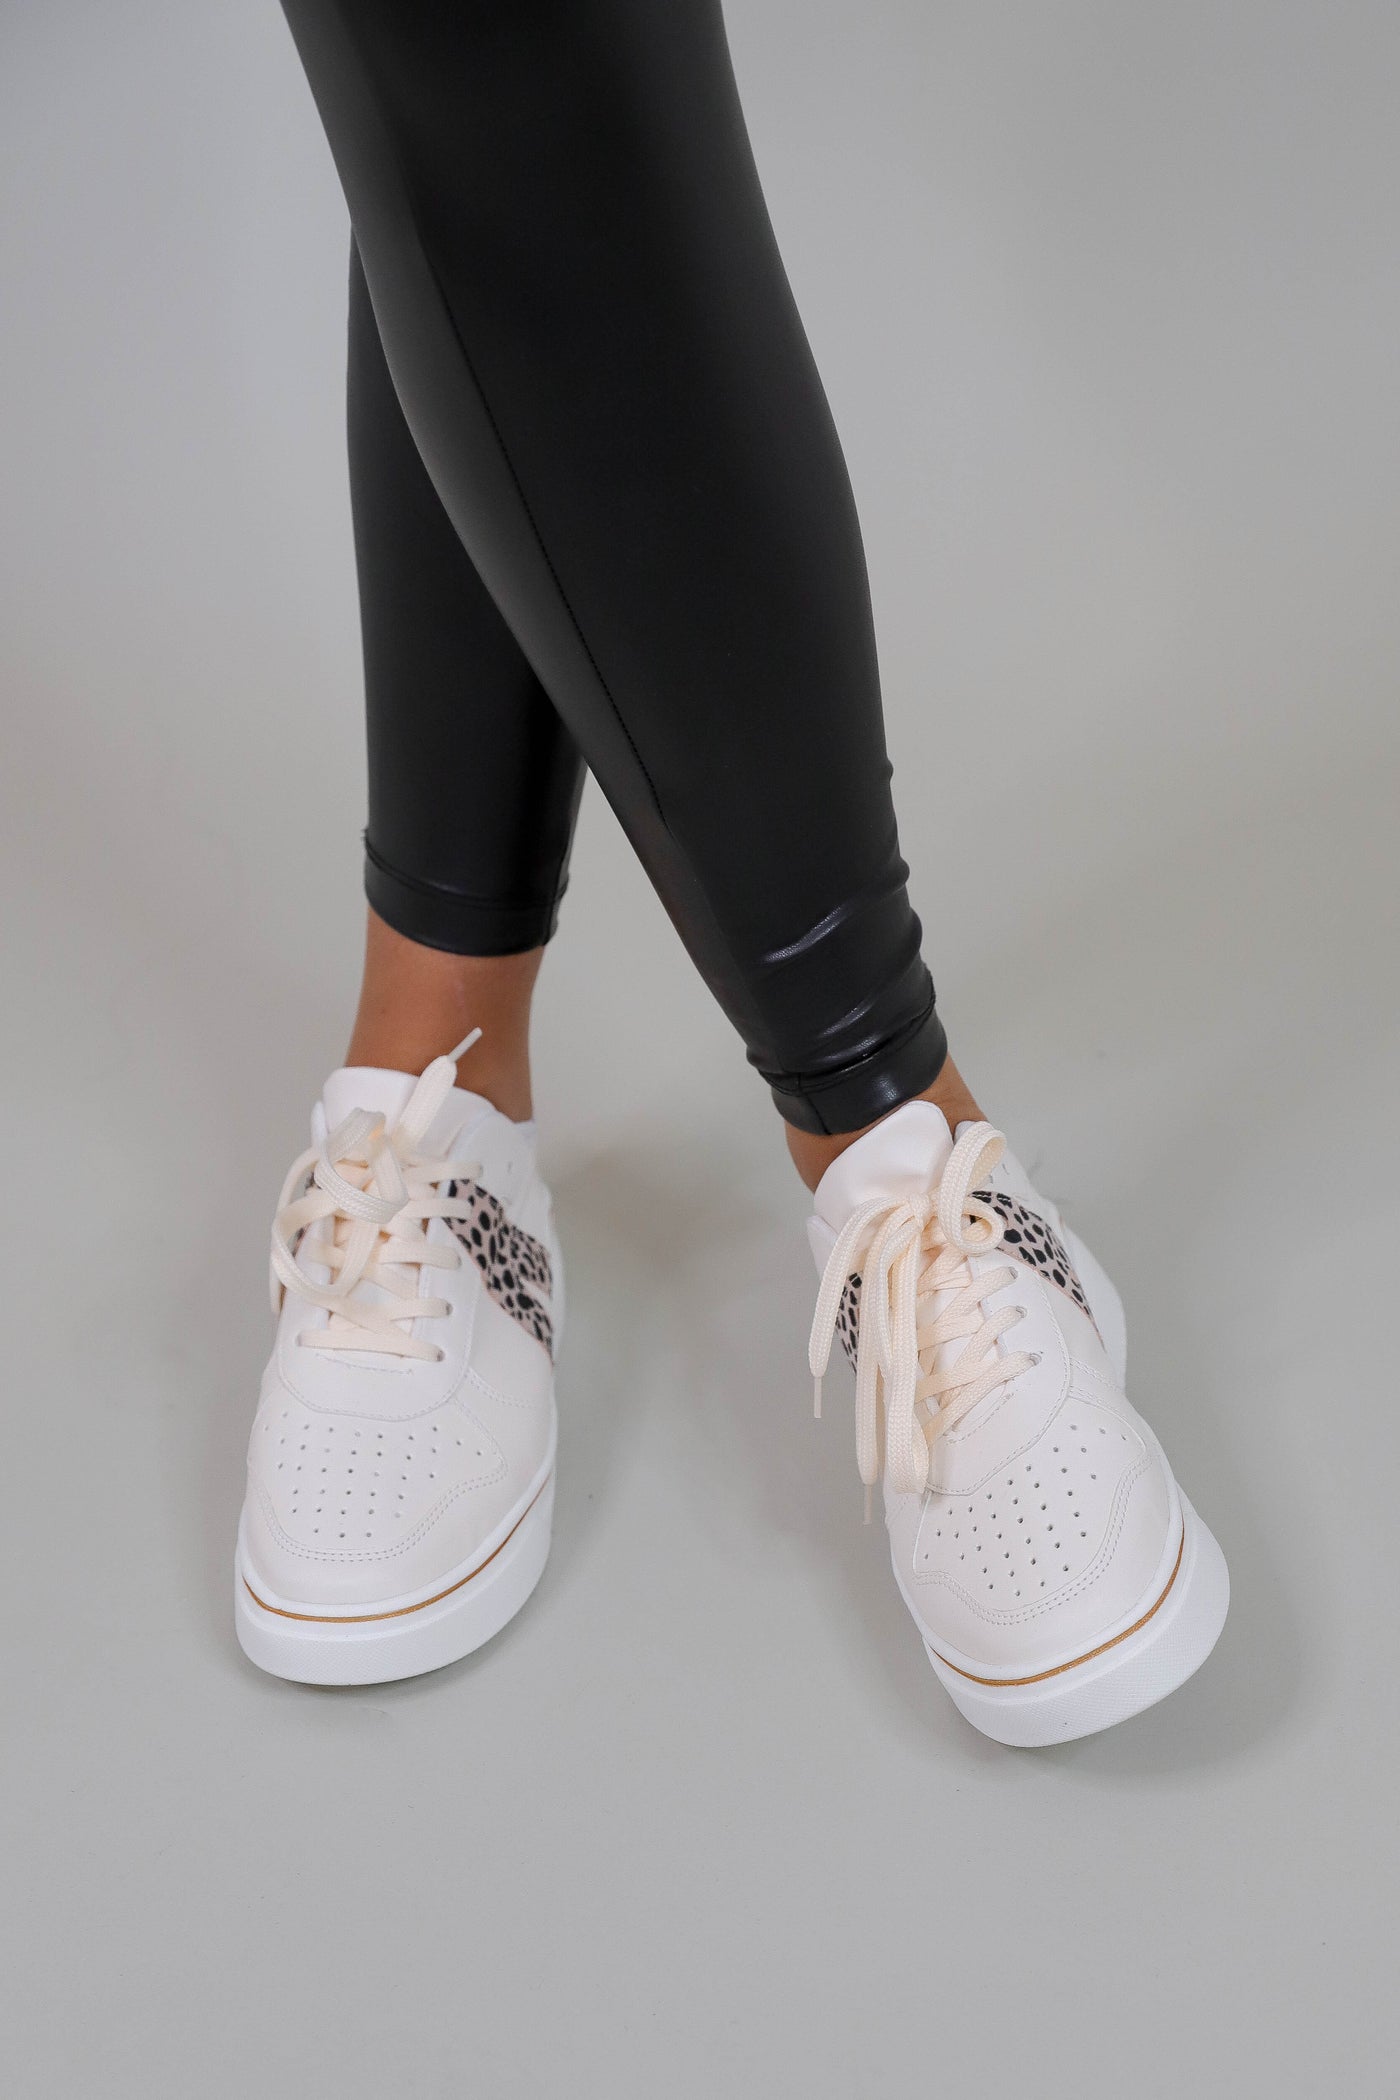 Women's Trendy White Sneakers- V Sneakers- Designer Inspired Sneakers